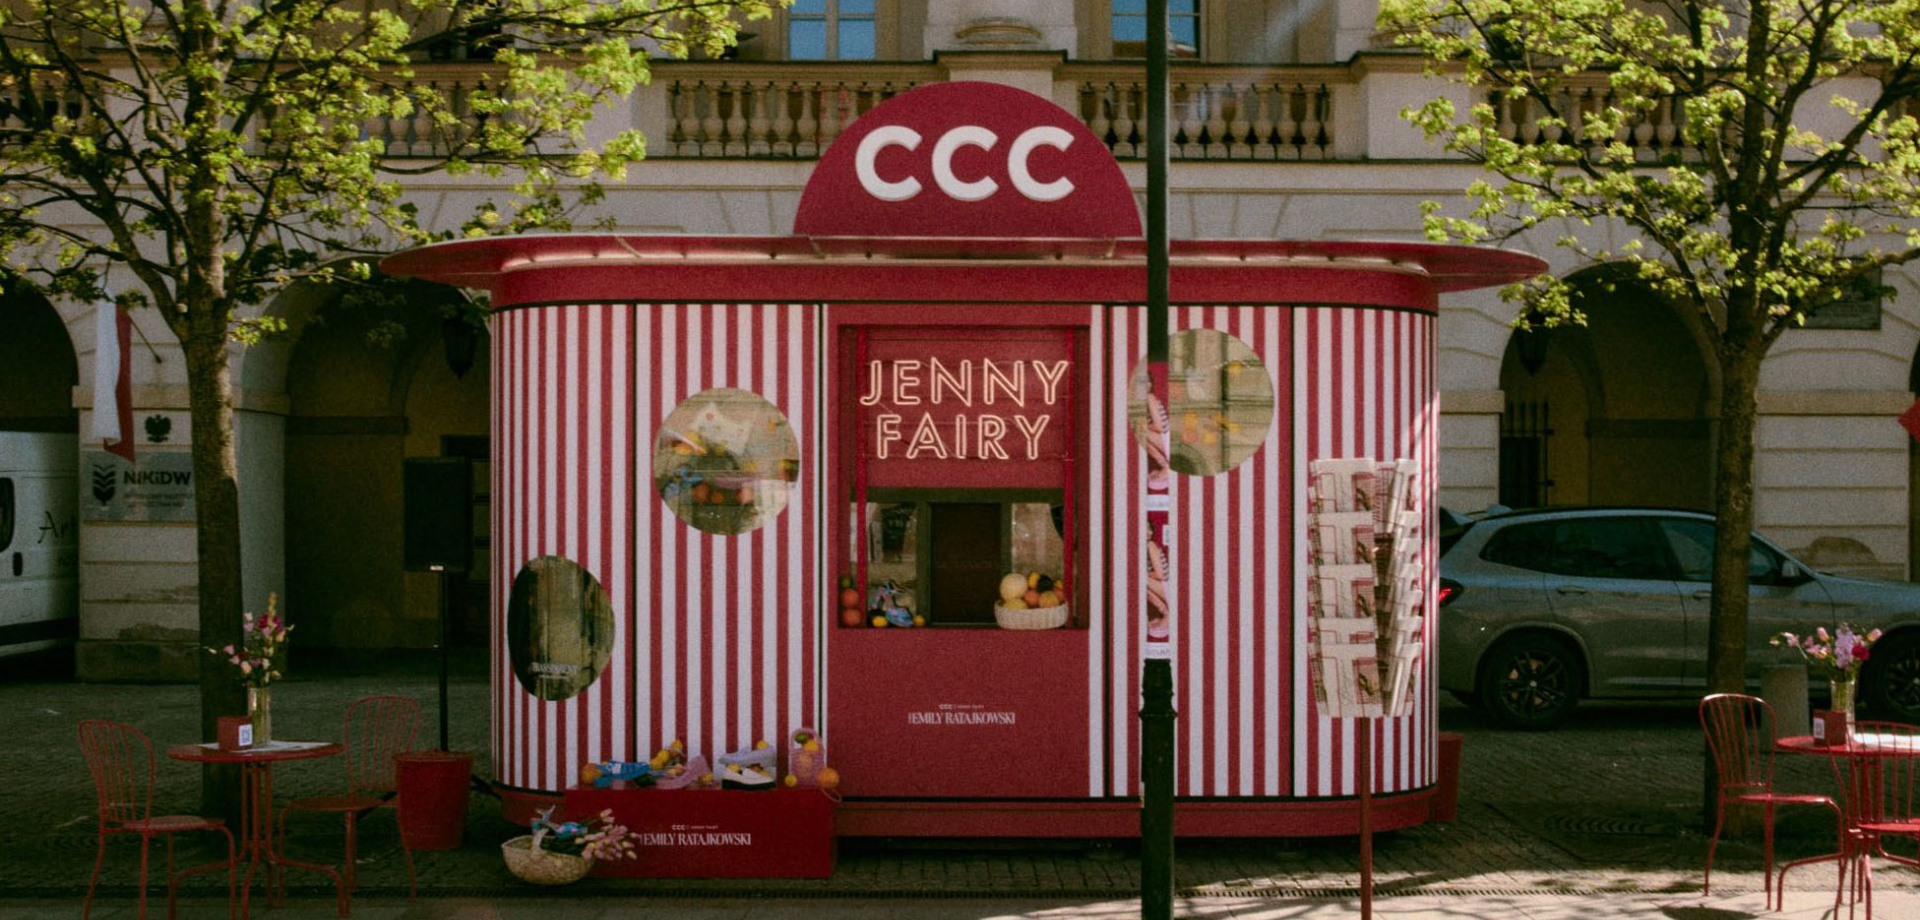 Słoneczna Riwiera w Warszawie. Francuski kiosk Jenny Fairy przyciągnął tłumy